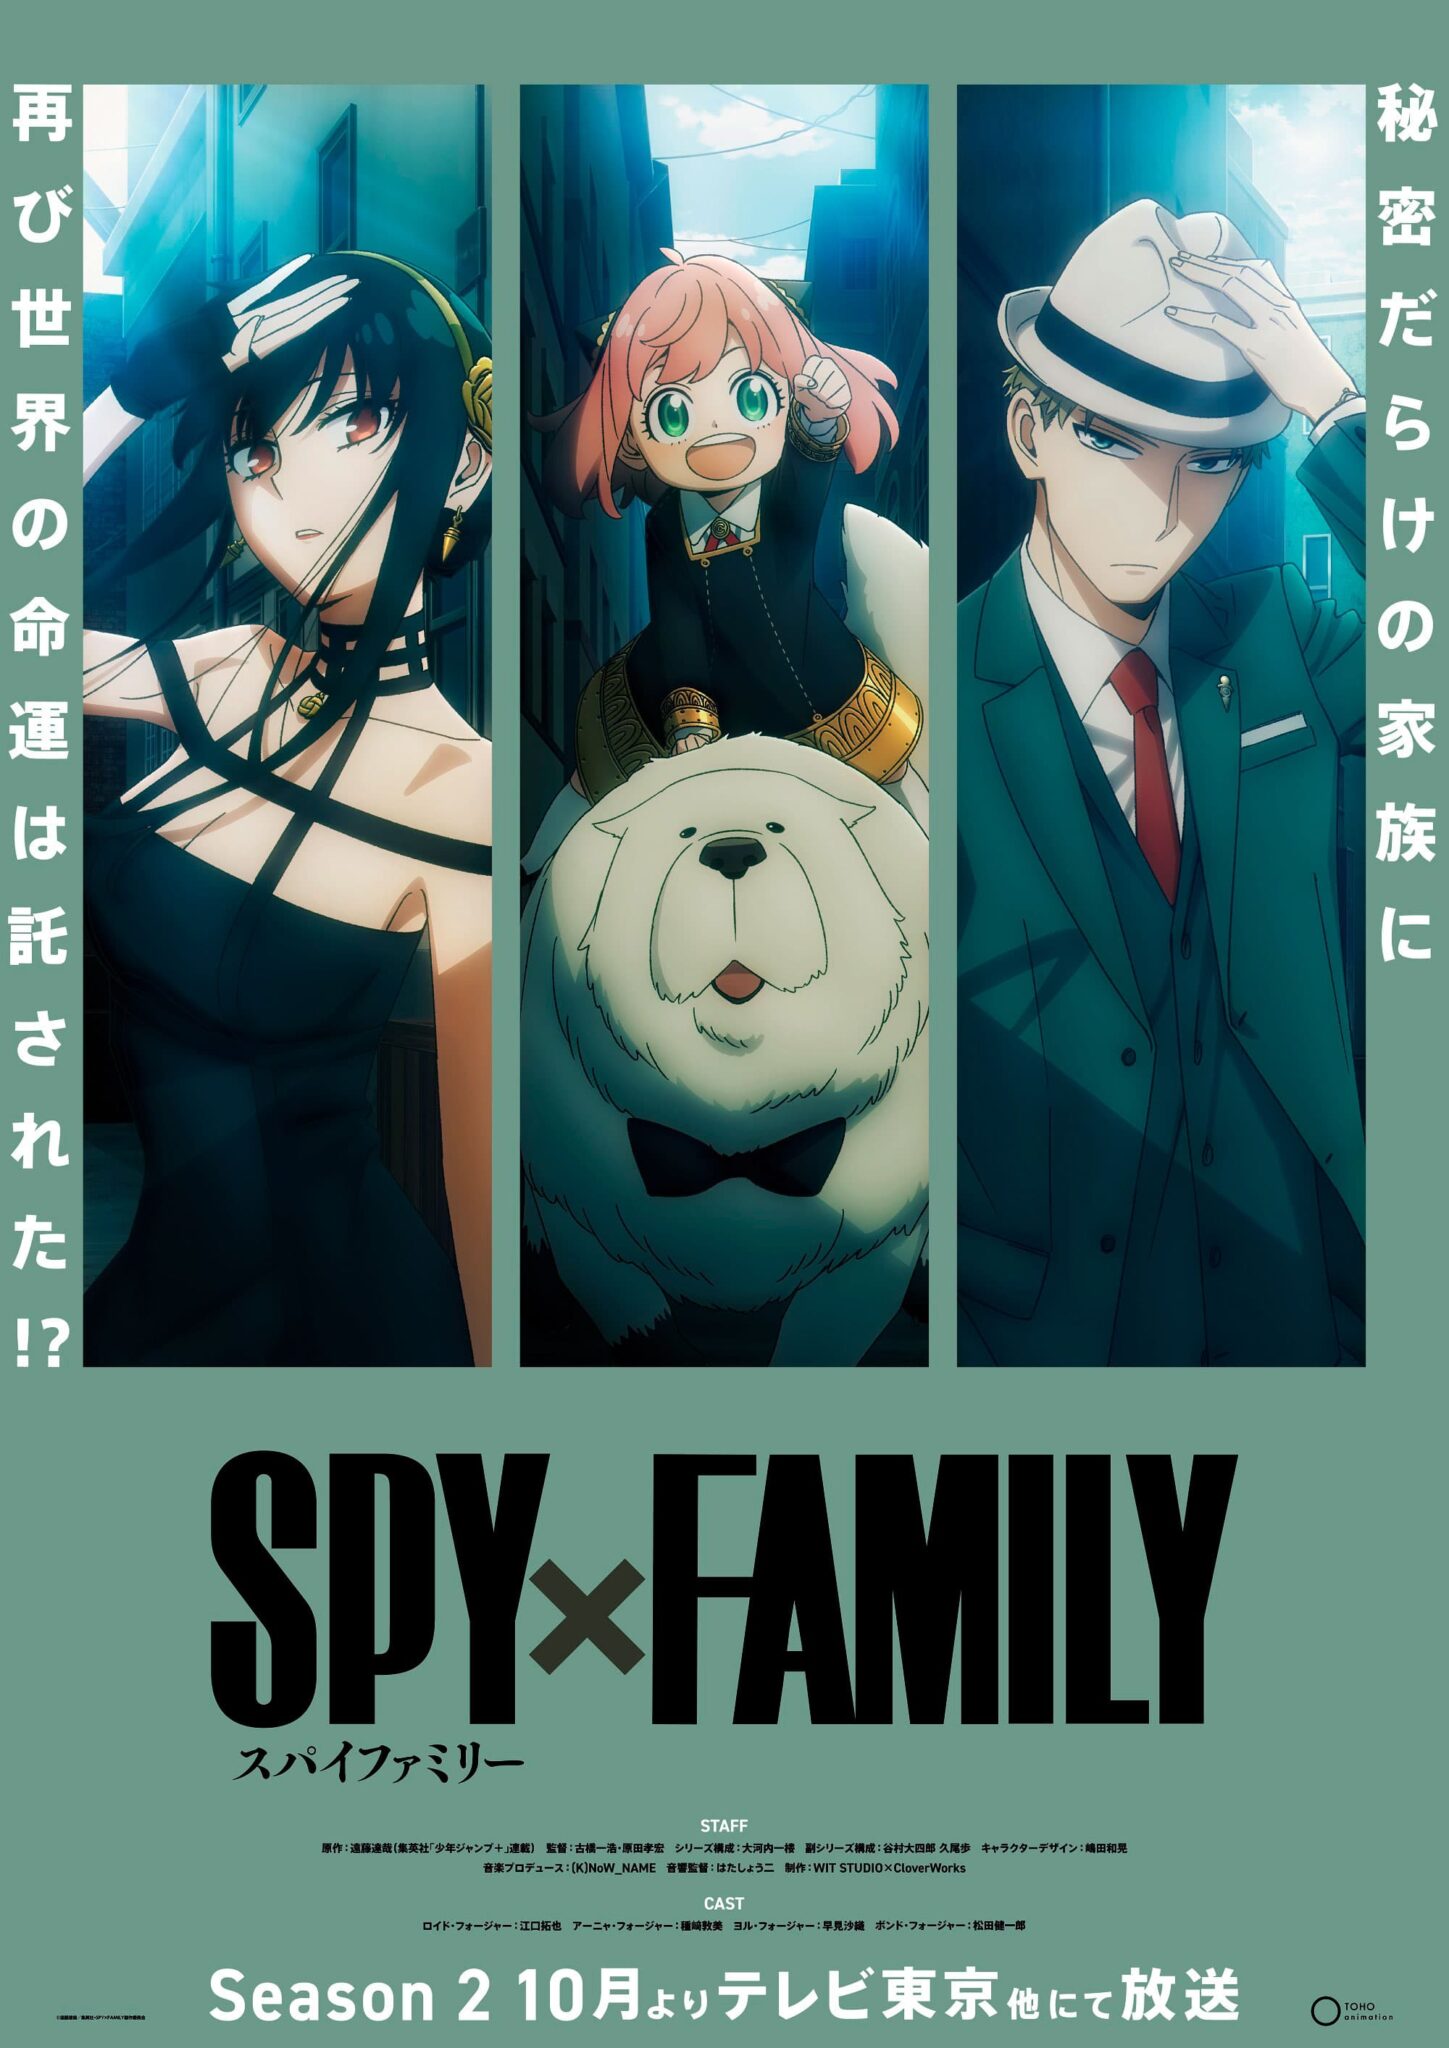 SPY x FAMILY revela nuevas imagenes promocionales para su segunda temporada